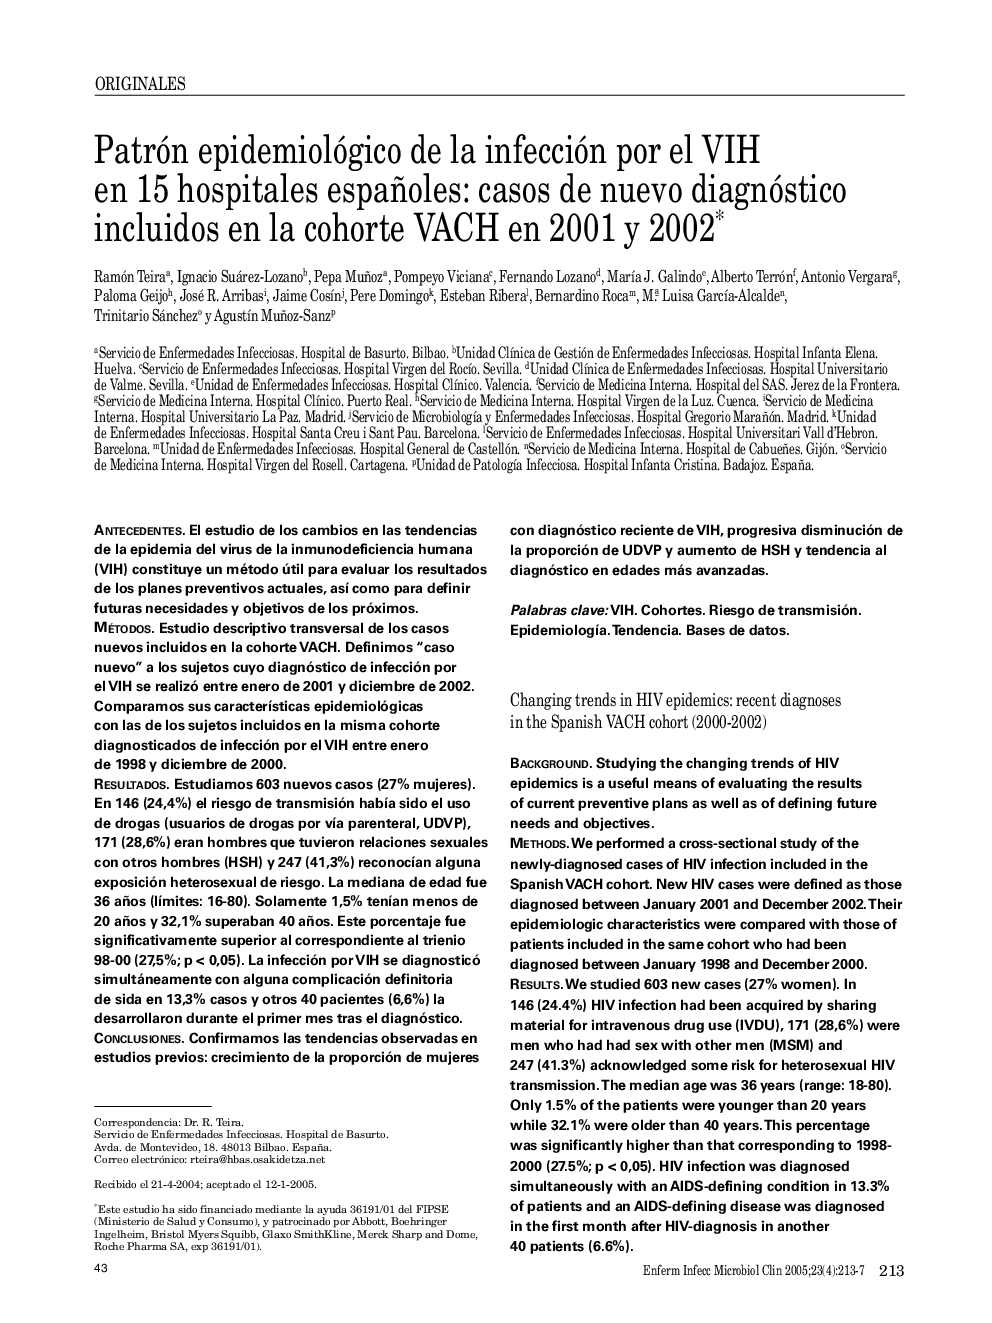 Patrón epidemiológico de la infección por el VIH en 15 hospitales españoles: casos de nuevo diagnóstico incluidos en la cohorte VACH en 2001 y 2002